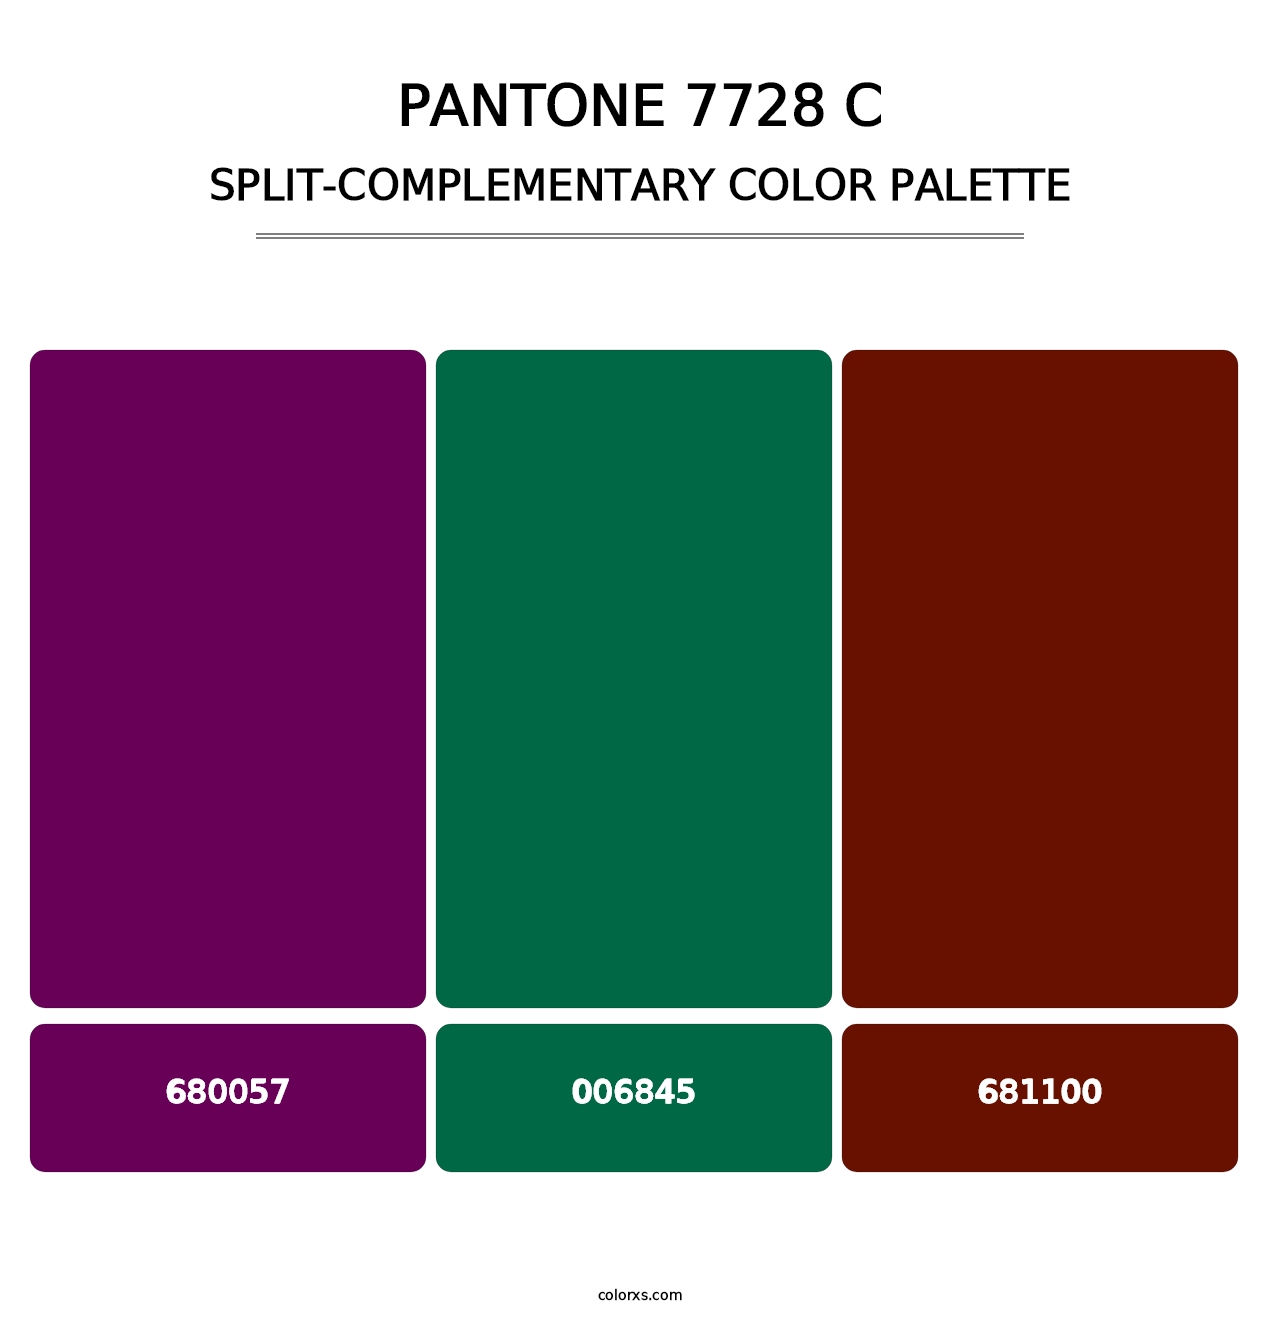 PANTONE 7728 C - Split-Complementary Color Palette